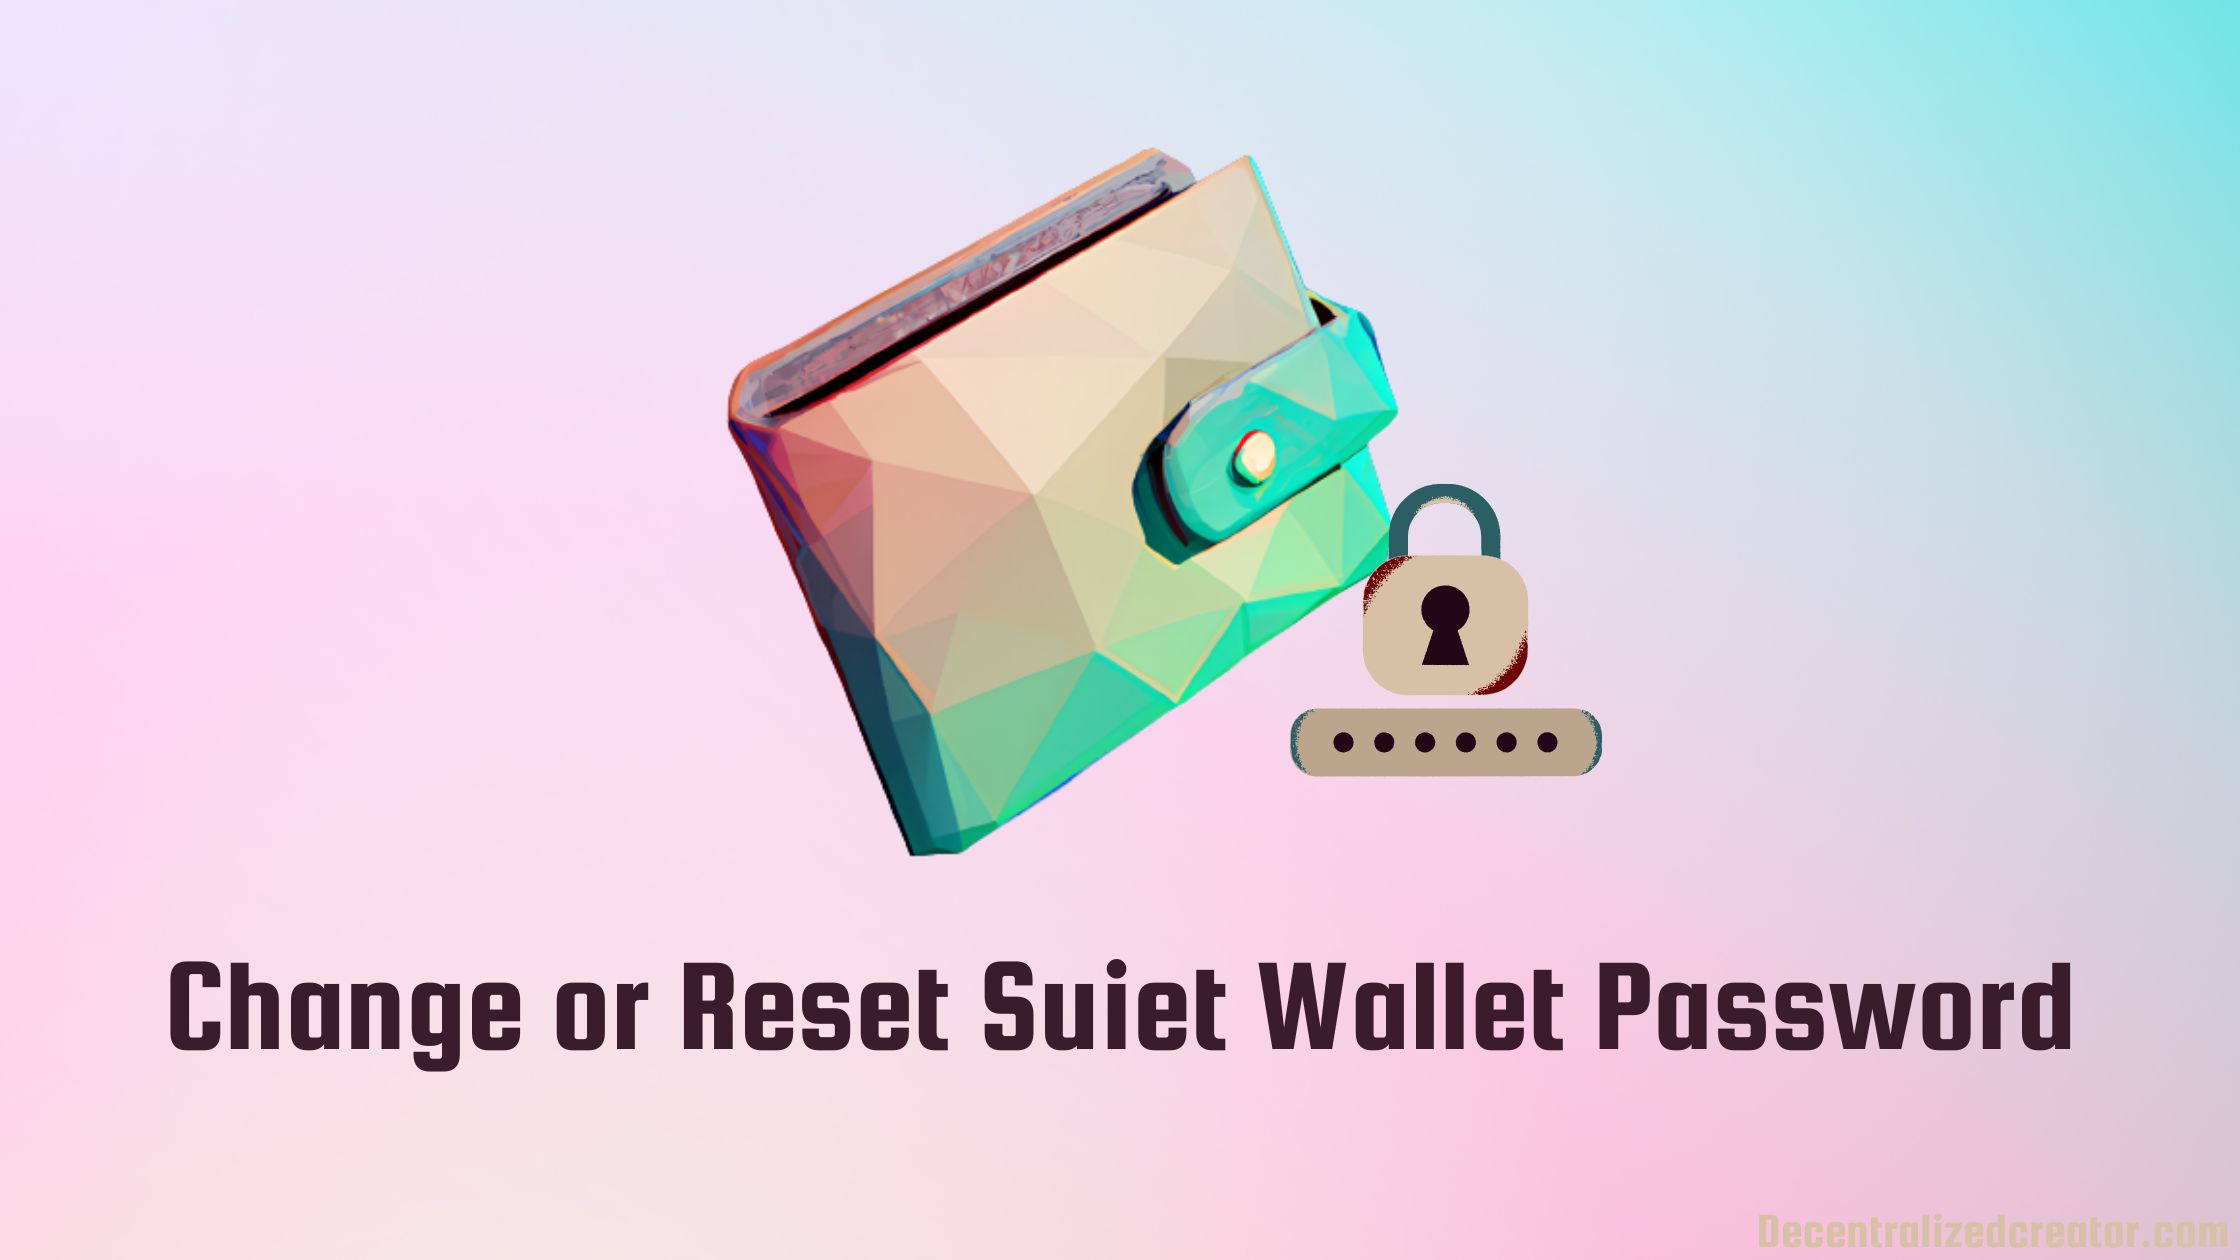 Change or Reset Suiet Wallet Password